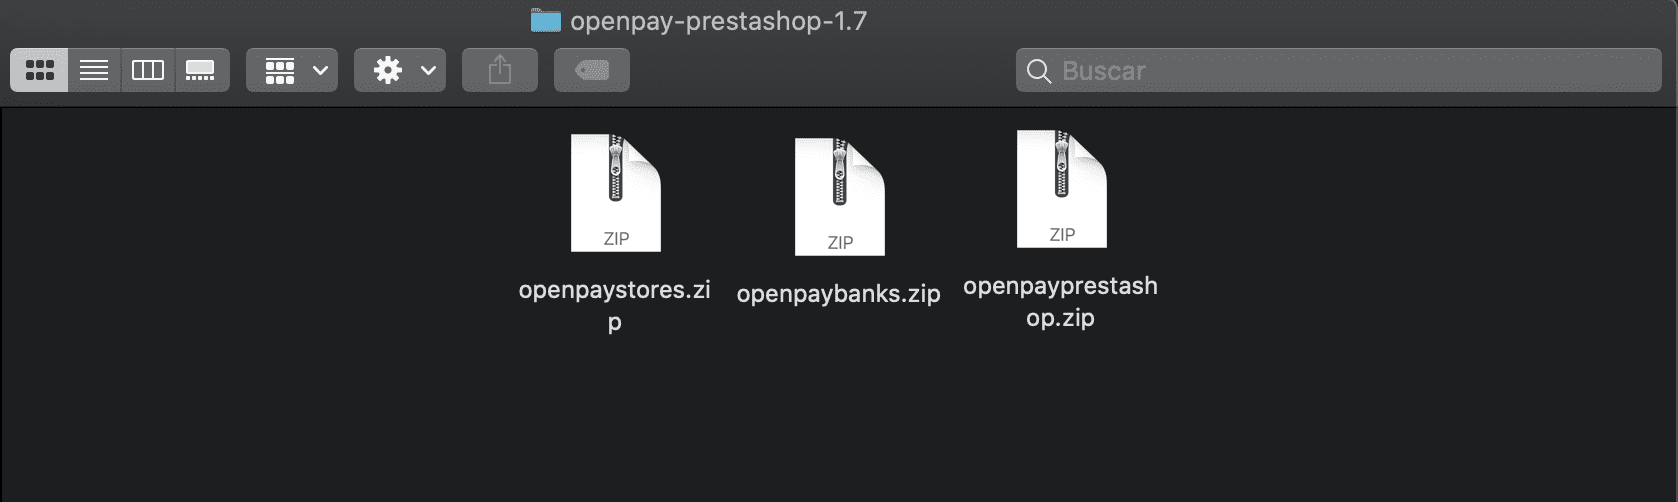 Instalación de plugin PrestaShop paso 2